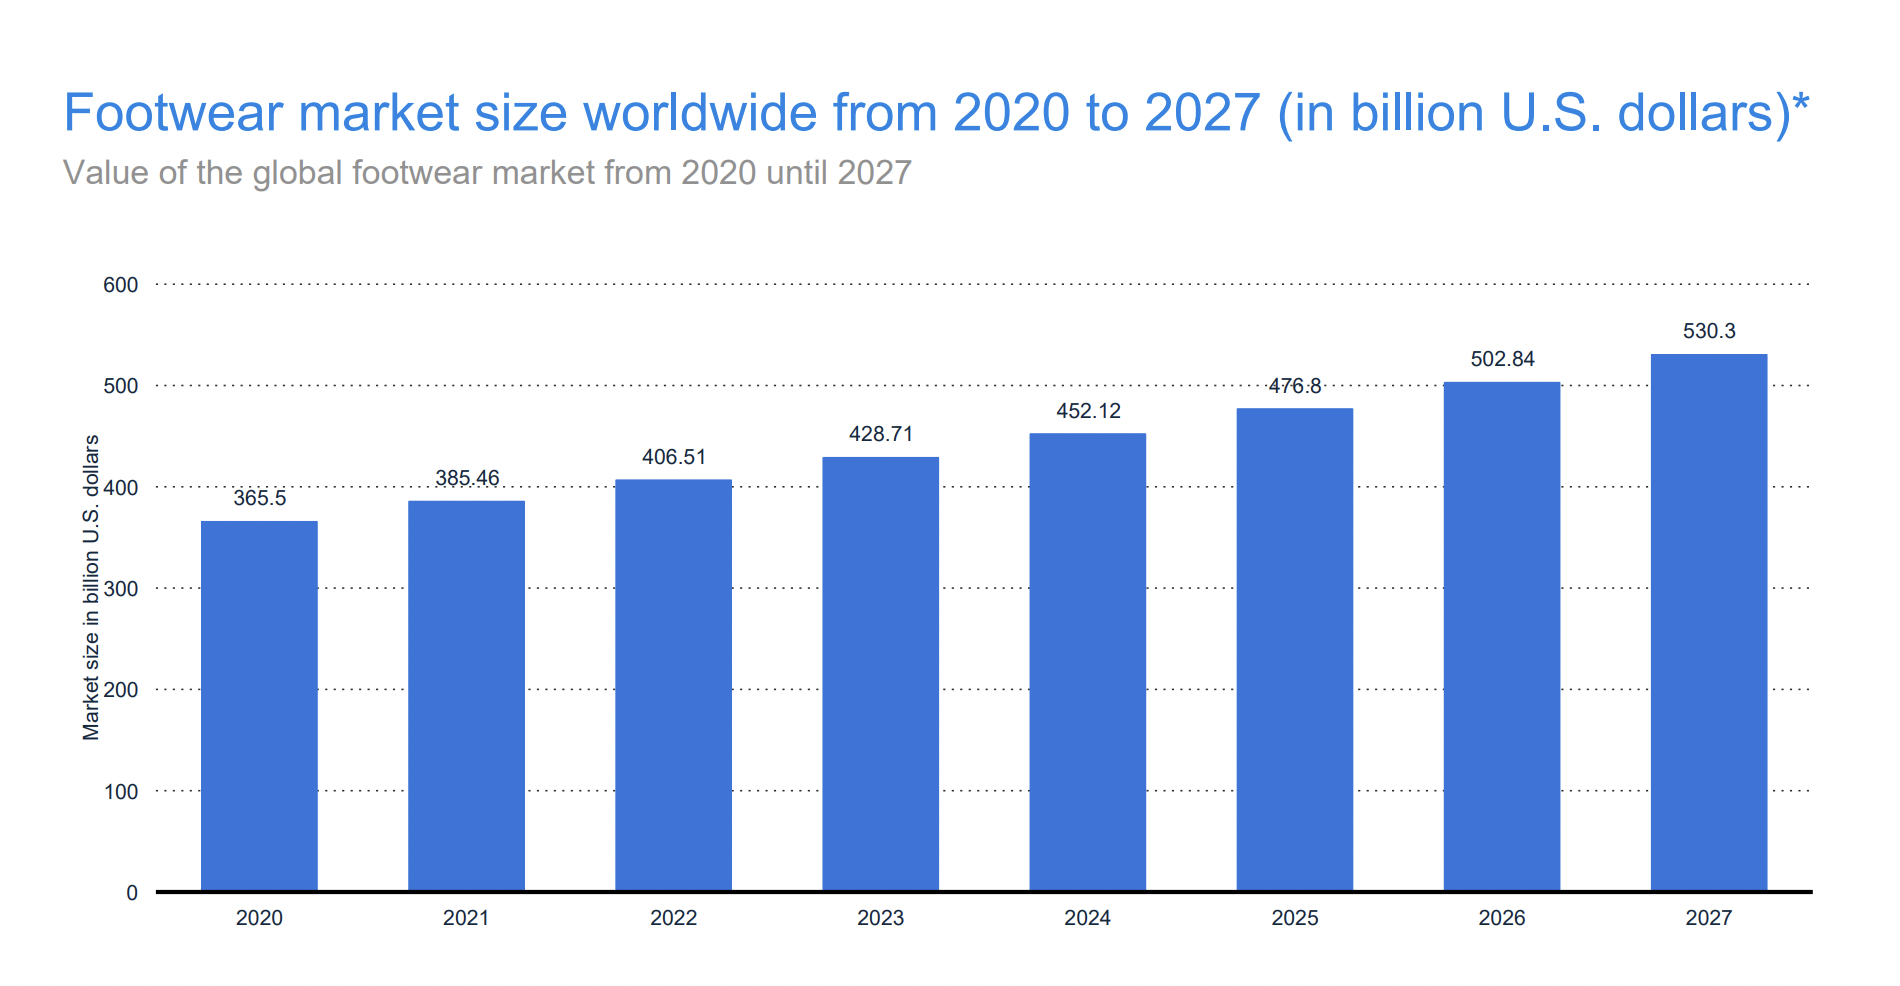 Footwear market size worldwide from 2020 to 2027 (in billion USD)